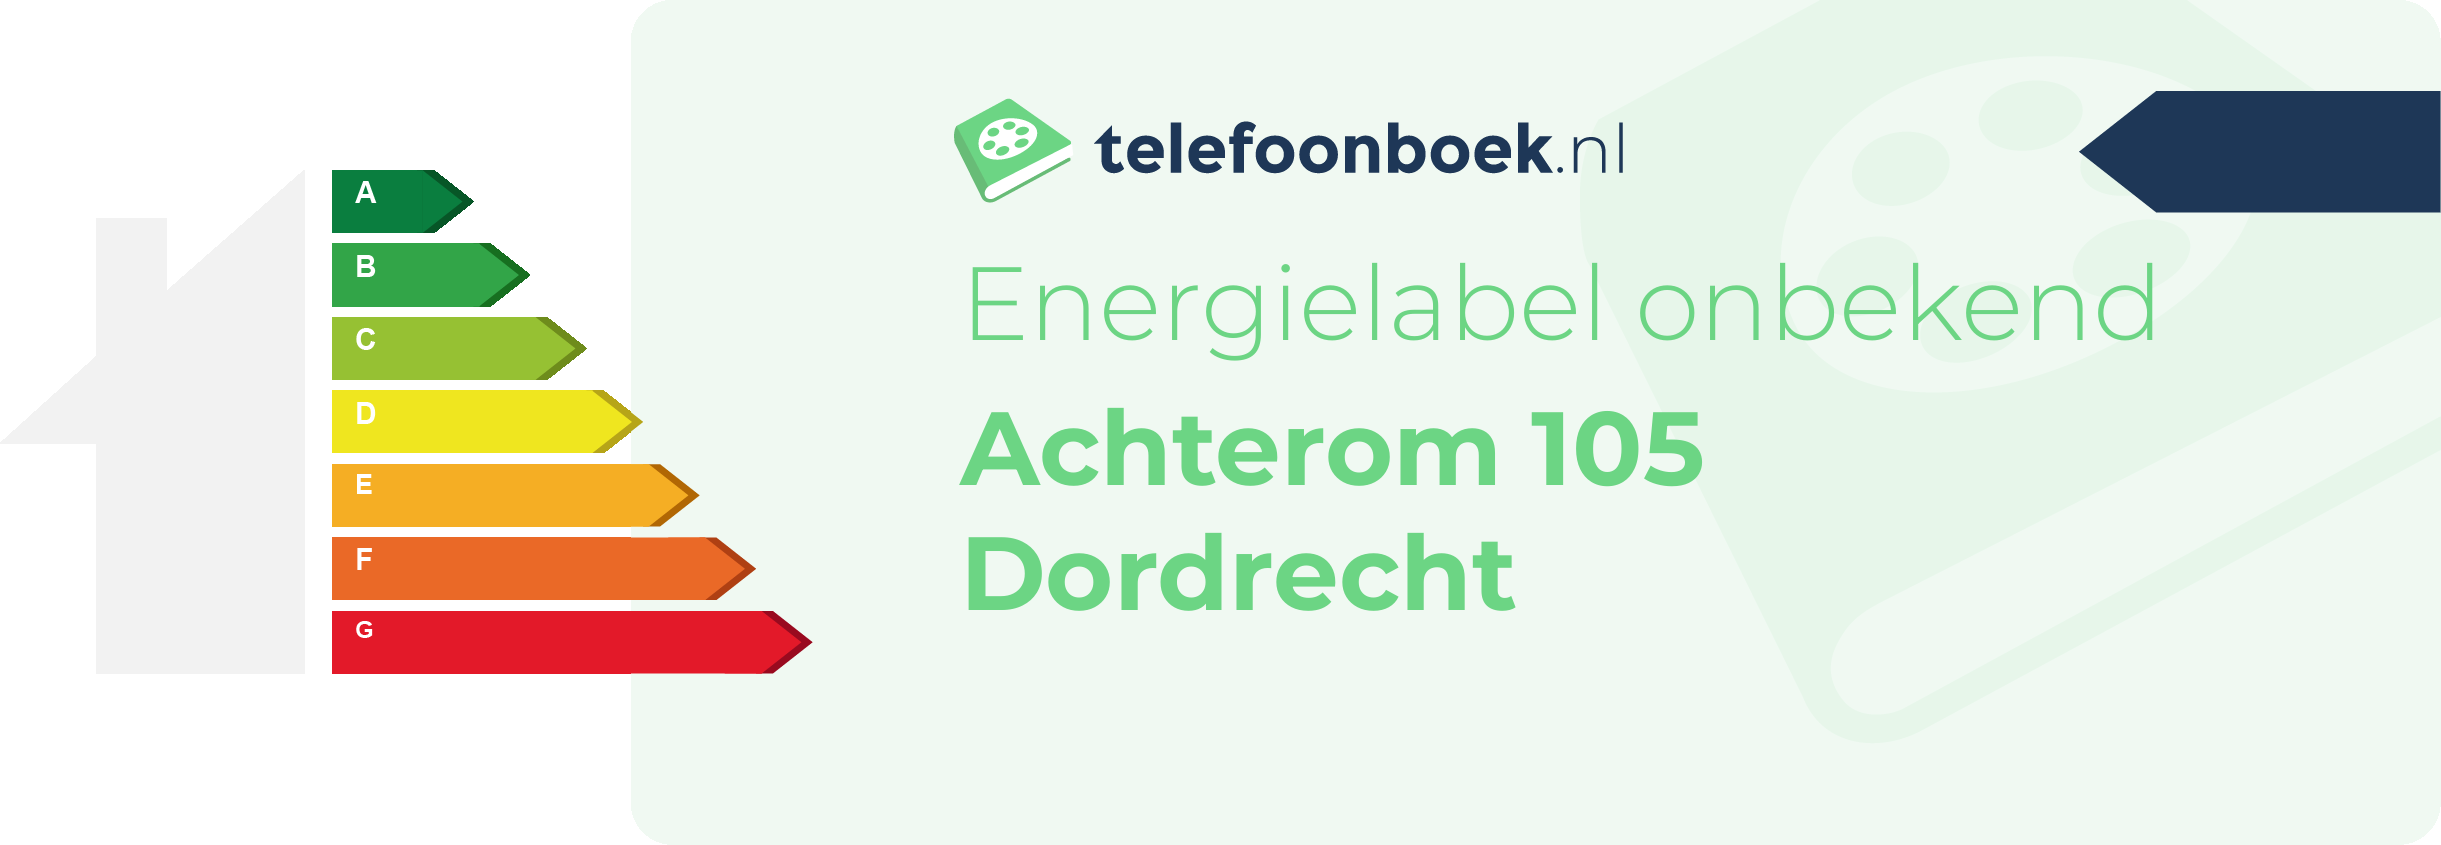 Energielabel Achterom 105 Dordrecht